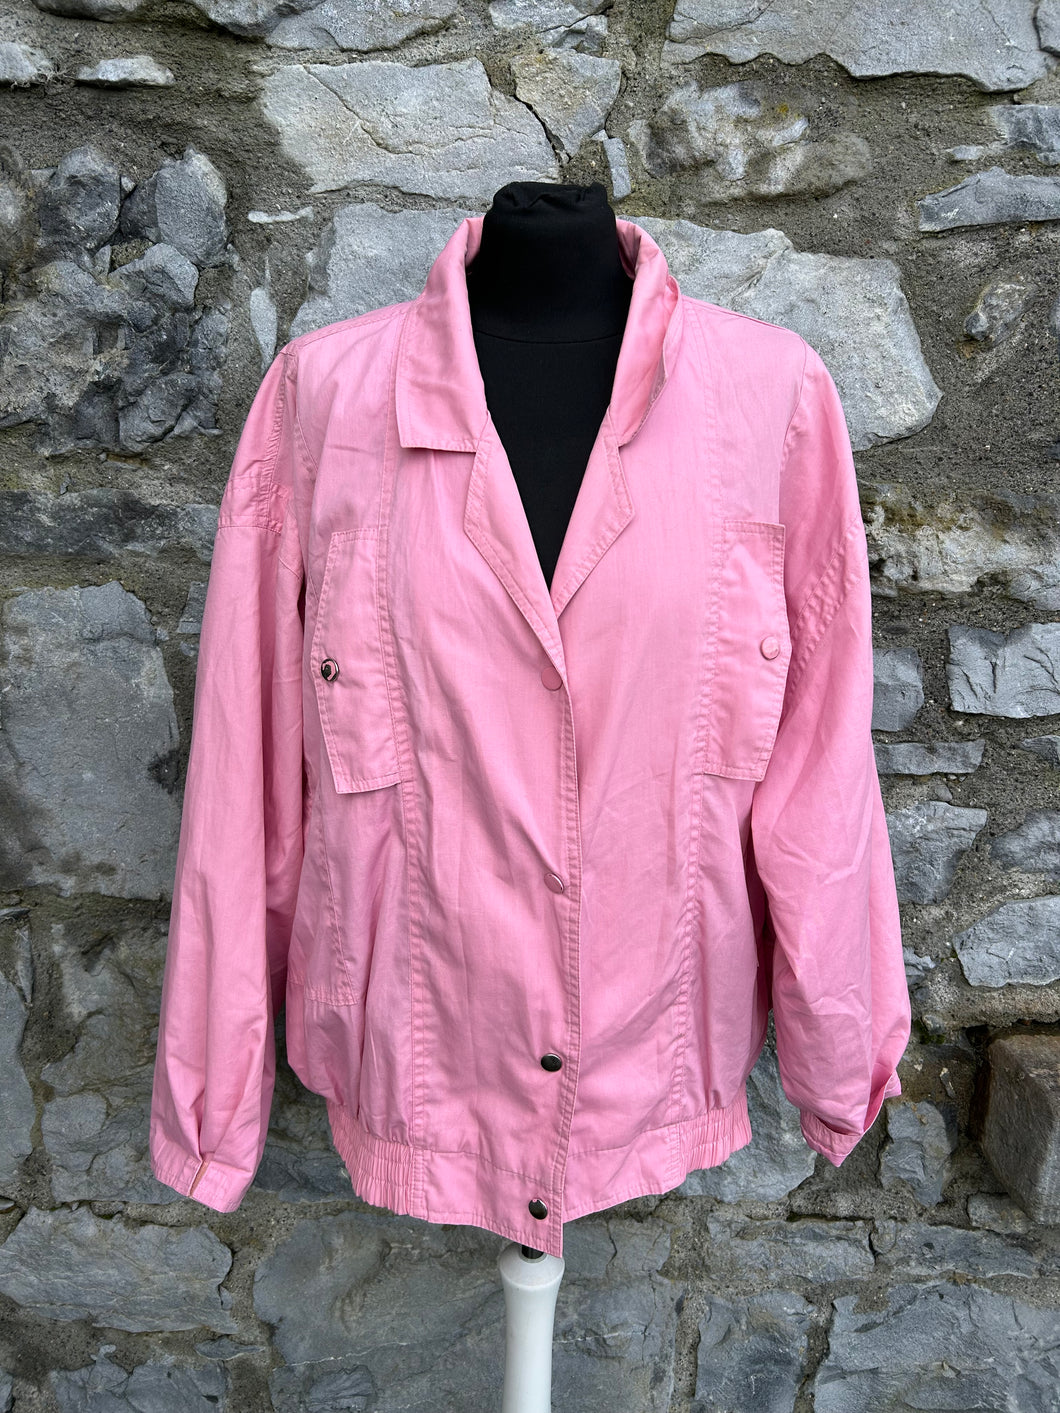 80s pink jacket uk 14-16